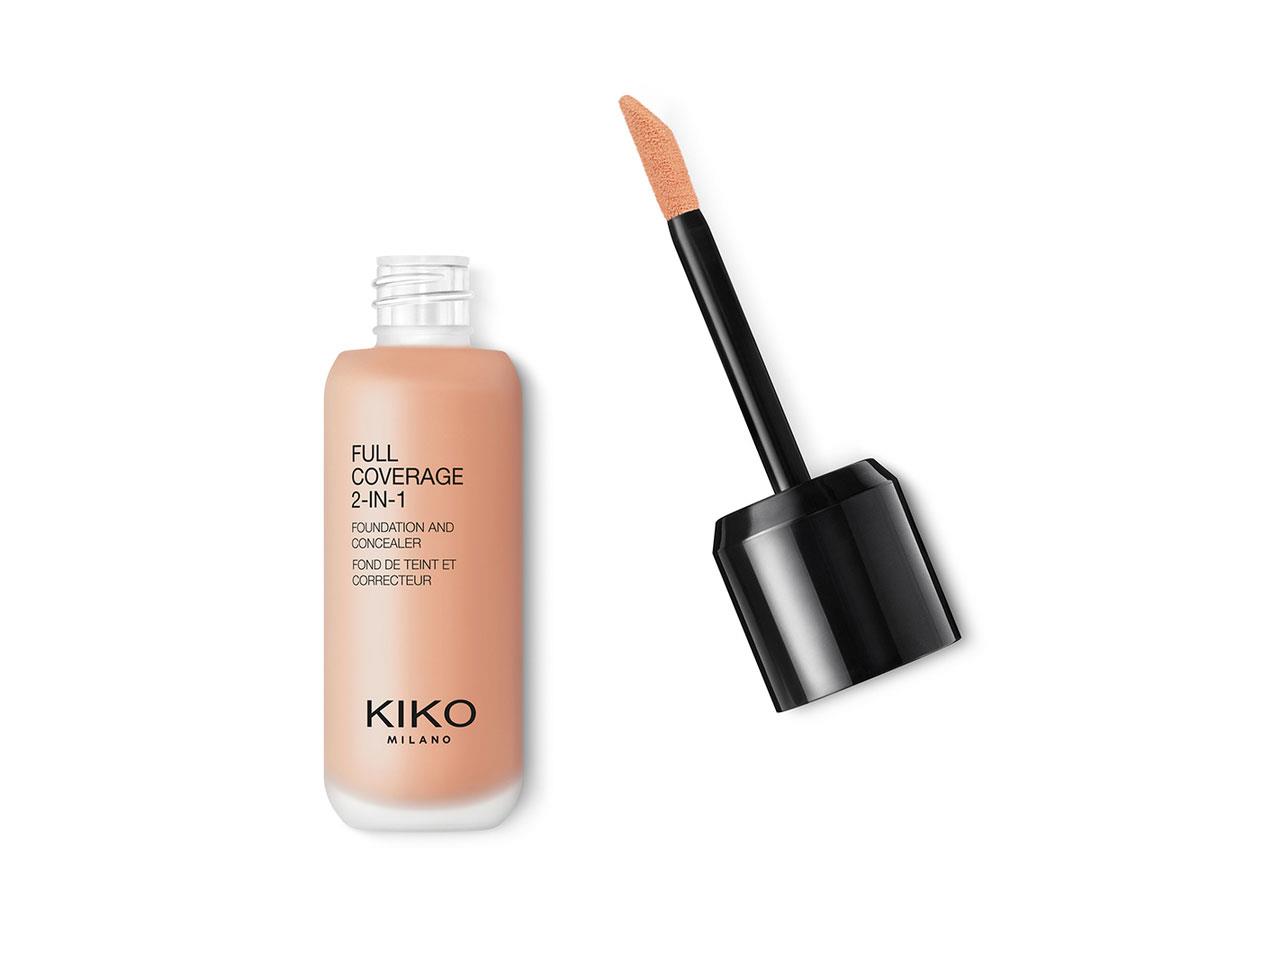 rebajas kiko milano Base de maquillaje y corrector 2 en 1 de Kiko Milano, 13,29€ (antes 18,99€)